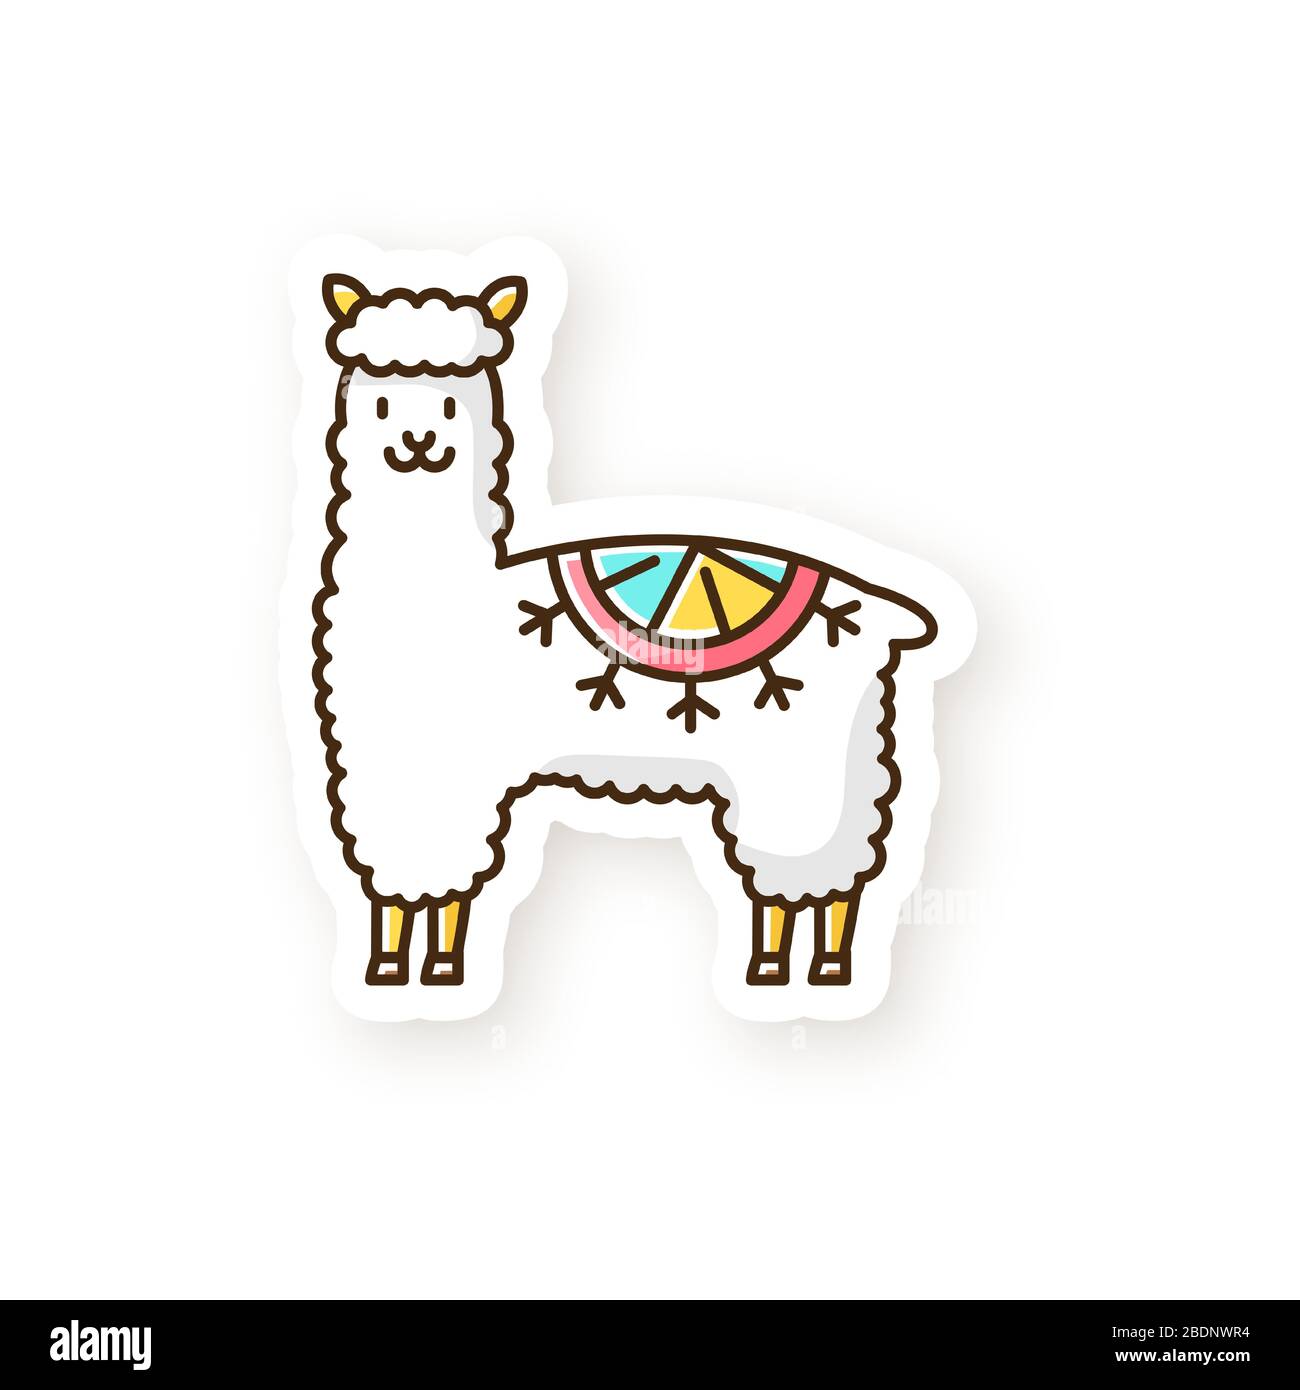 Parche de alpaca. Llama de lana coqueta domesticada peruana. Adorable camélido sudamericano. Animal rumiante con capucha procedente de los Andes. Mamífero tipo camello. RGB Ilustración del Vector